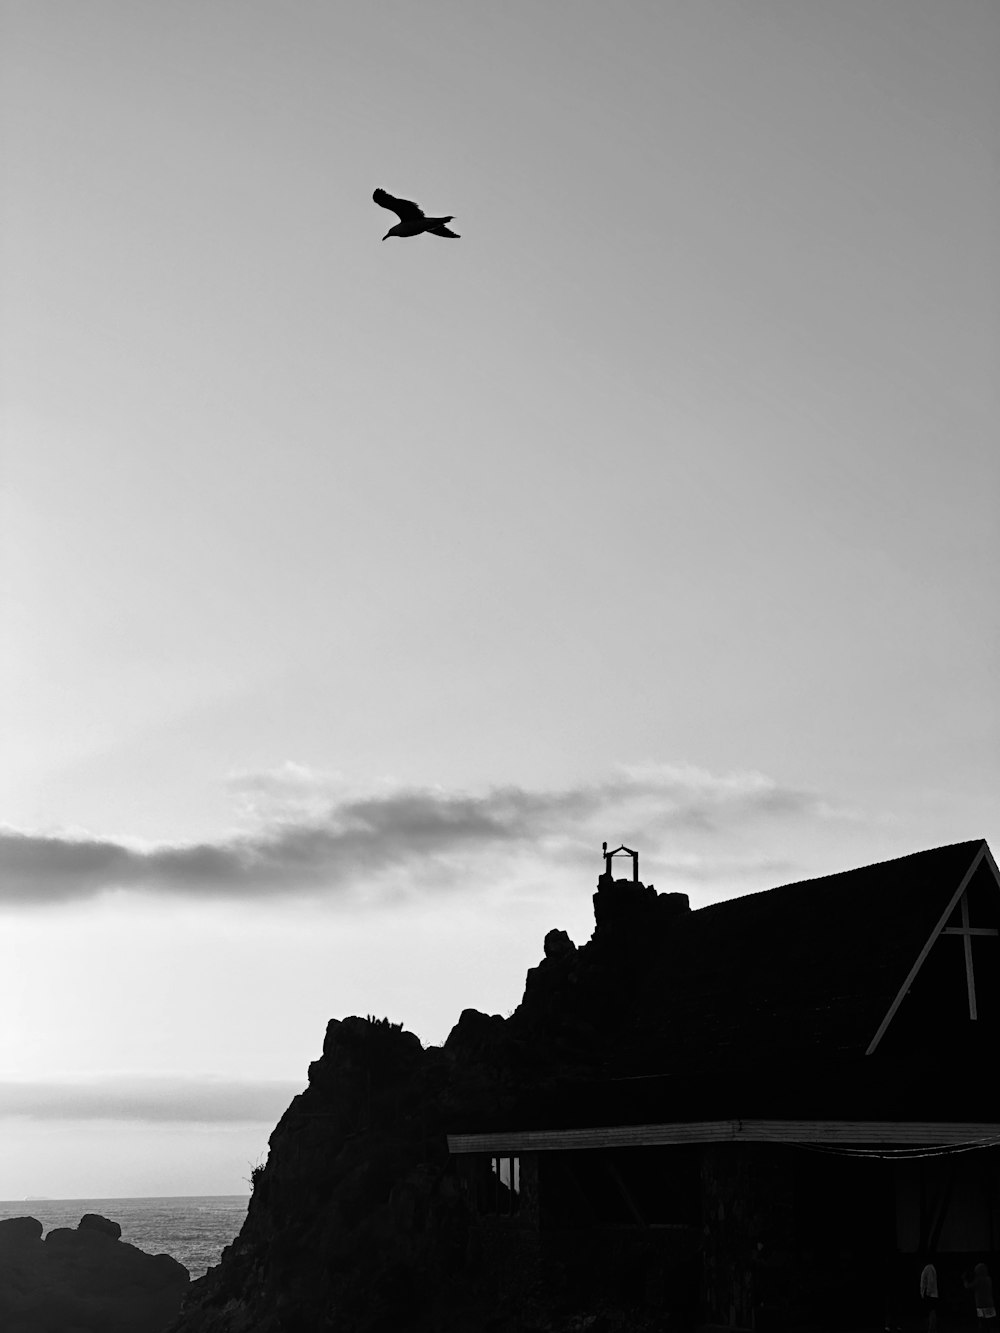 Una foto en blanco y negro de un pájaro volando sobre una casa